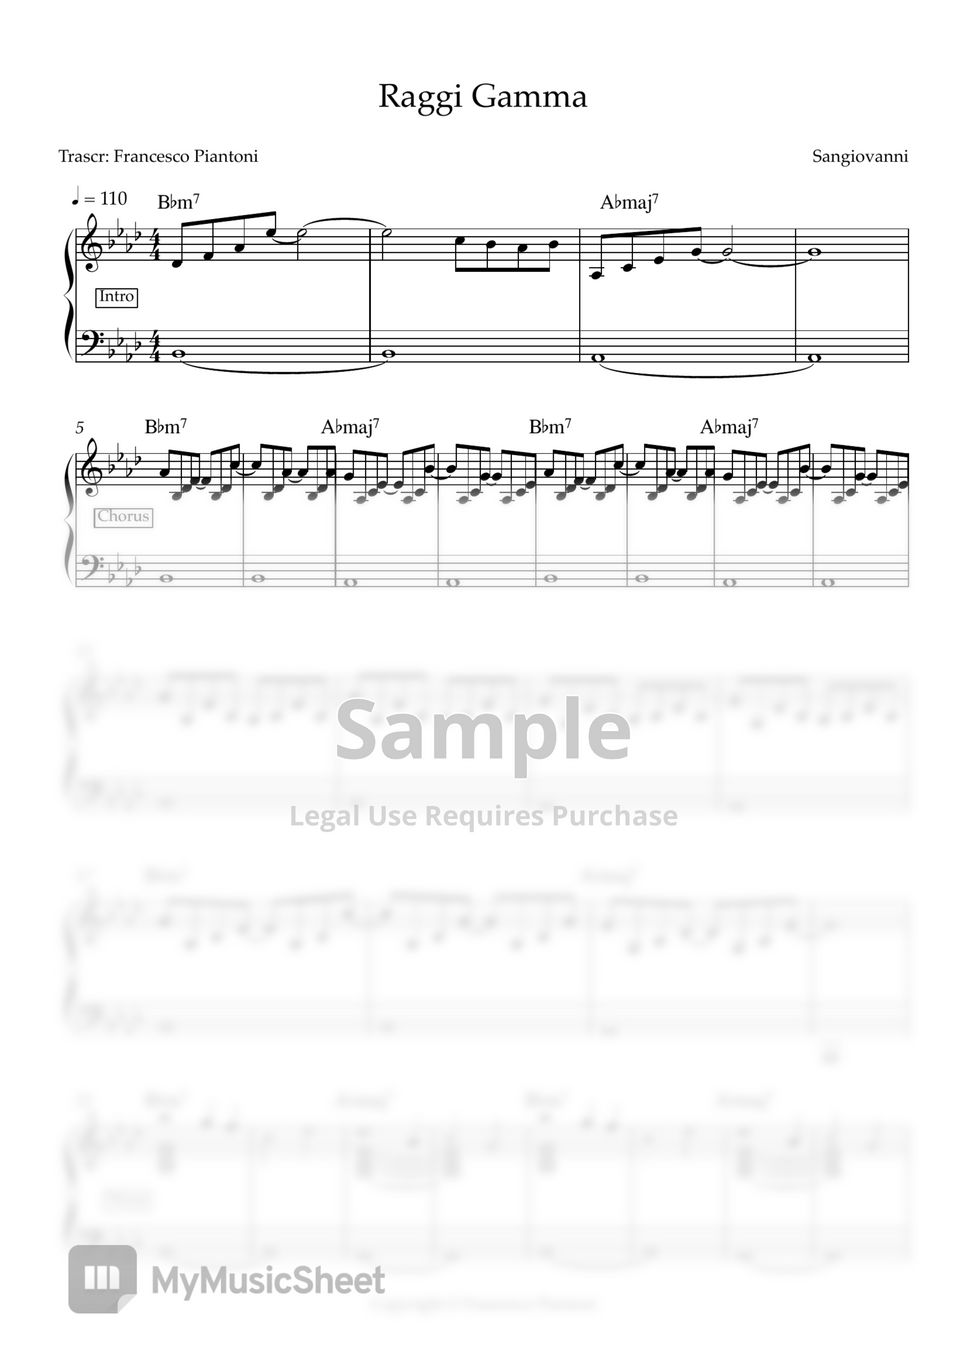 Sangiovanni - Raggi Gamma (spartito pianoforte) by Francesco Piantoni